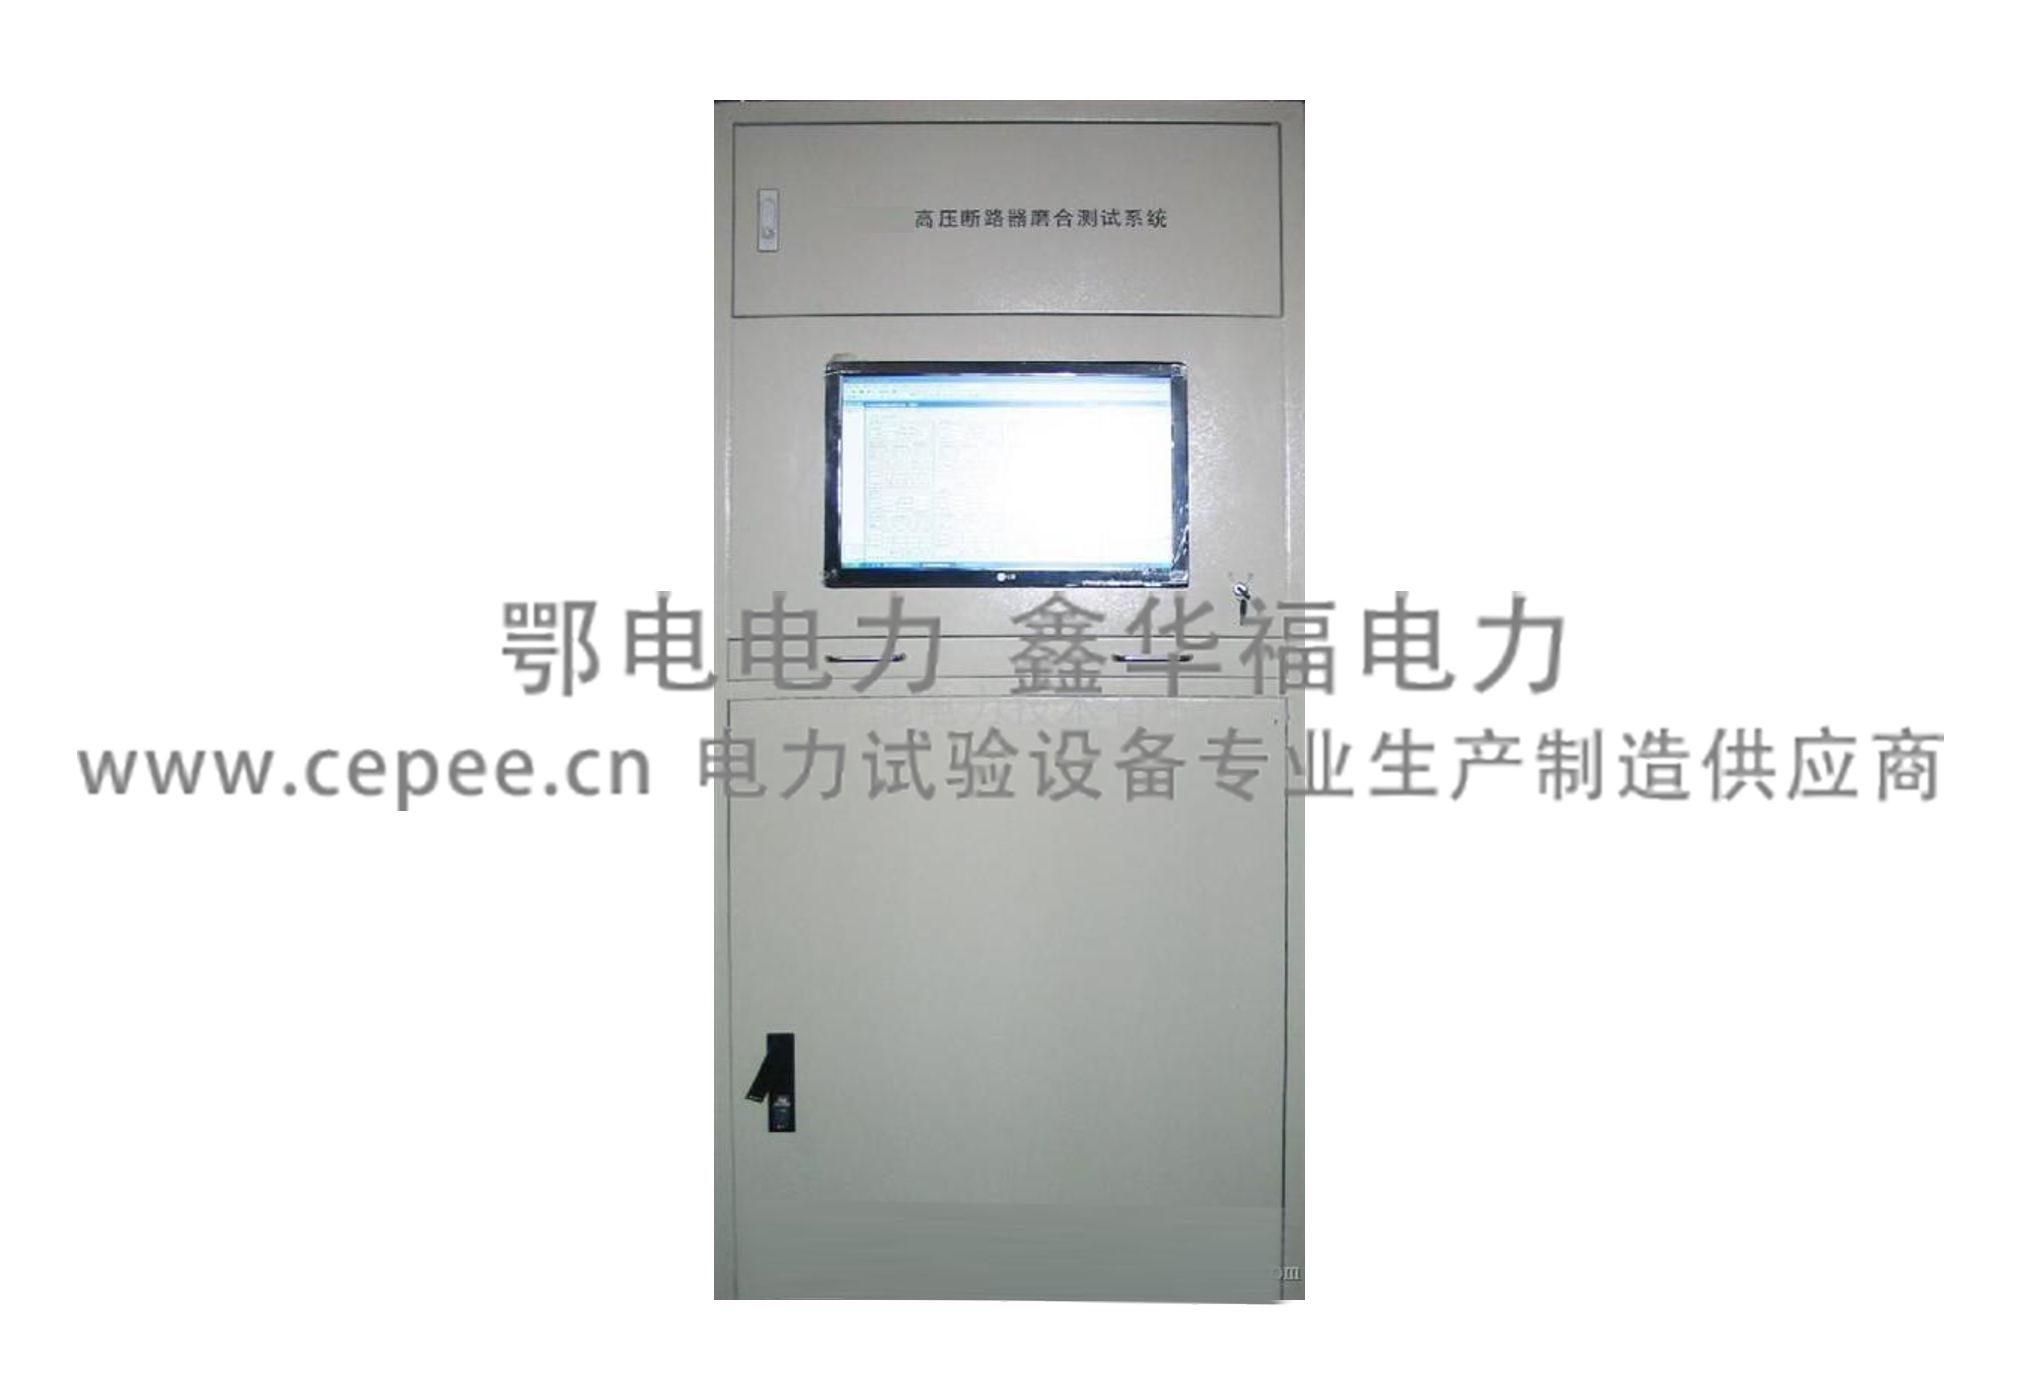 ED0308型高压断路器磨合测试系统(磨合台).jpg